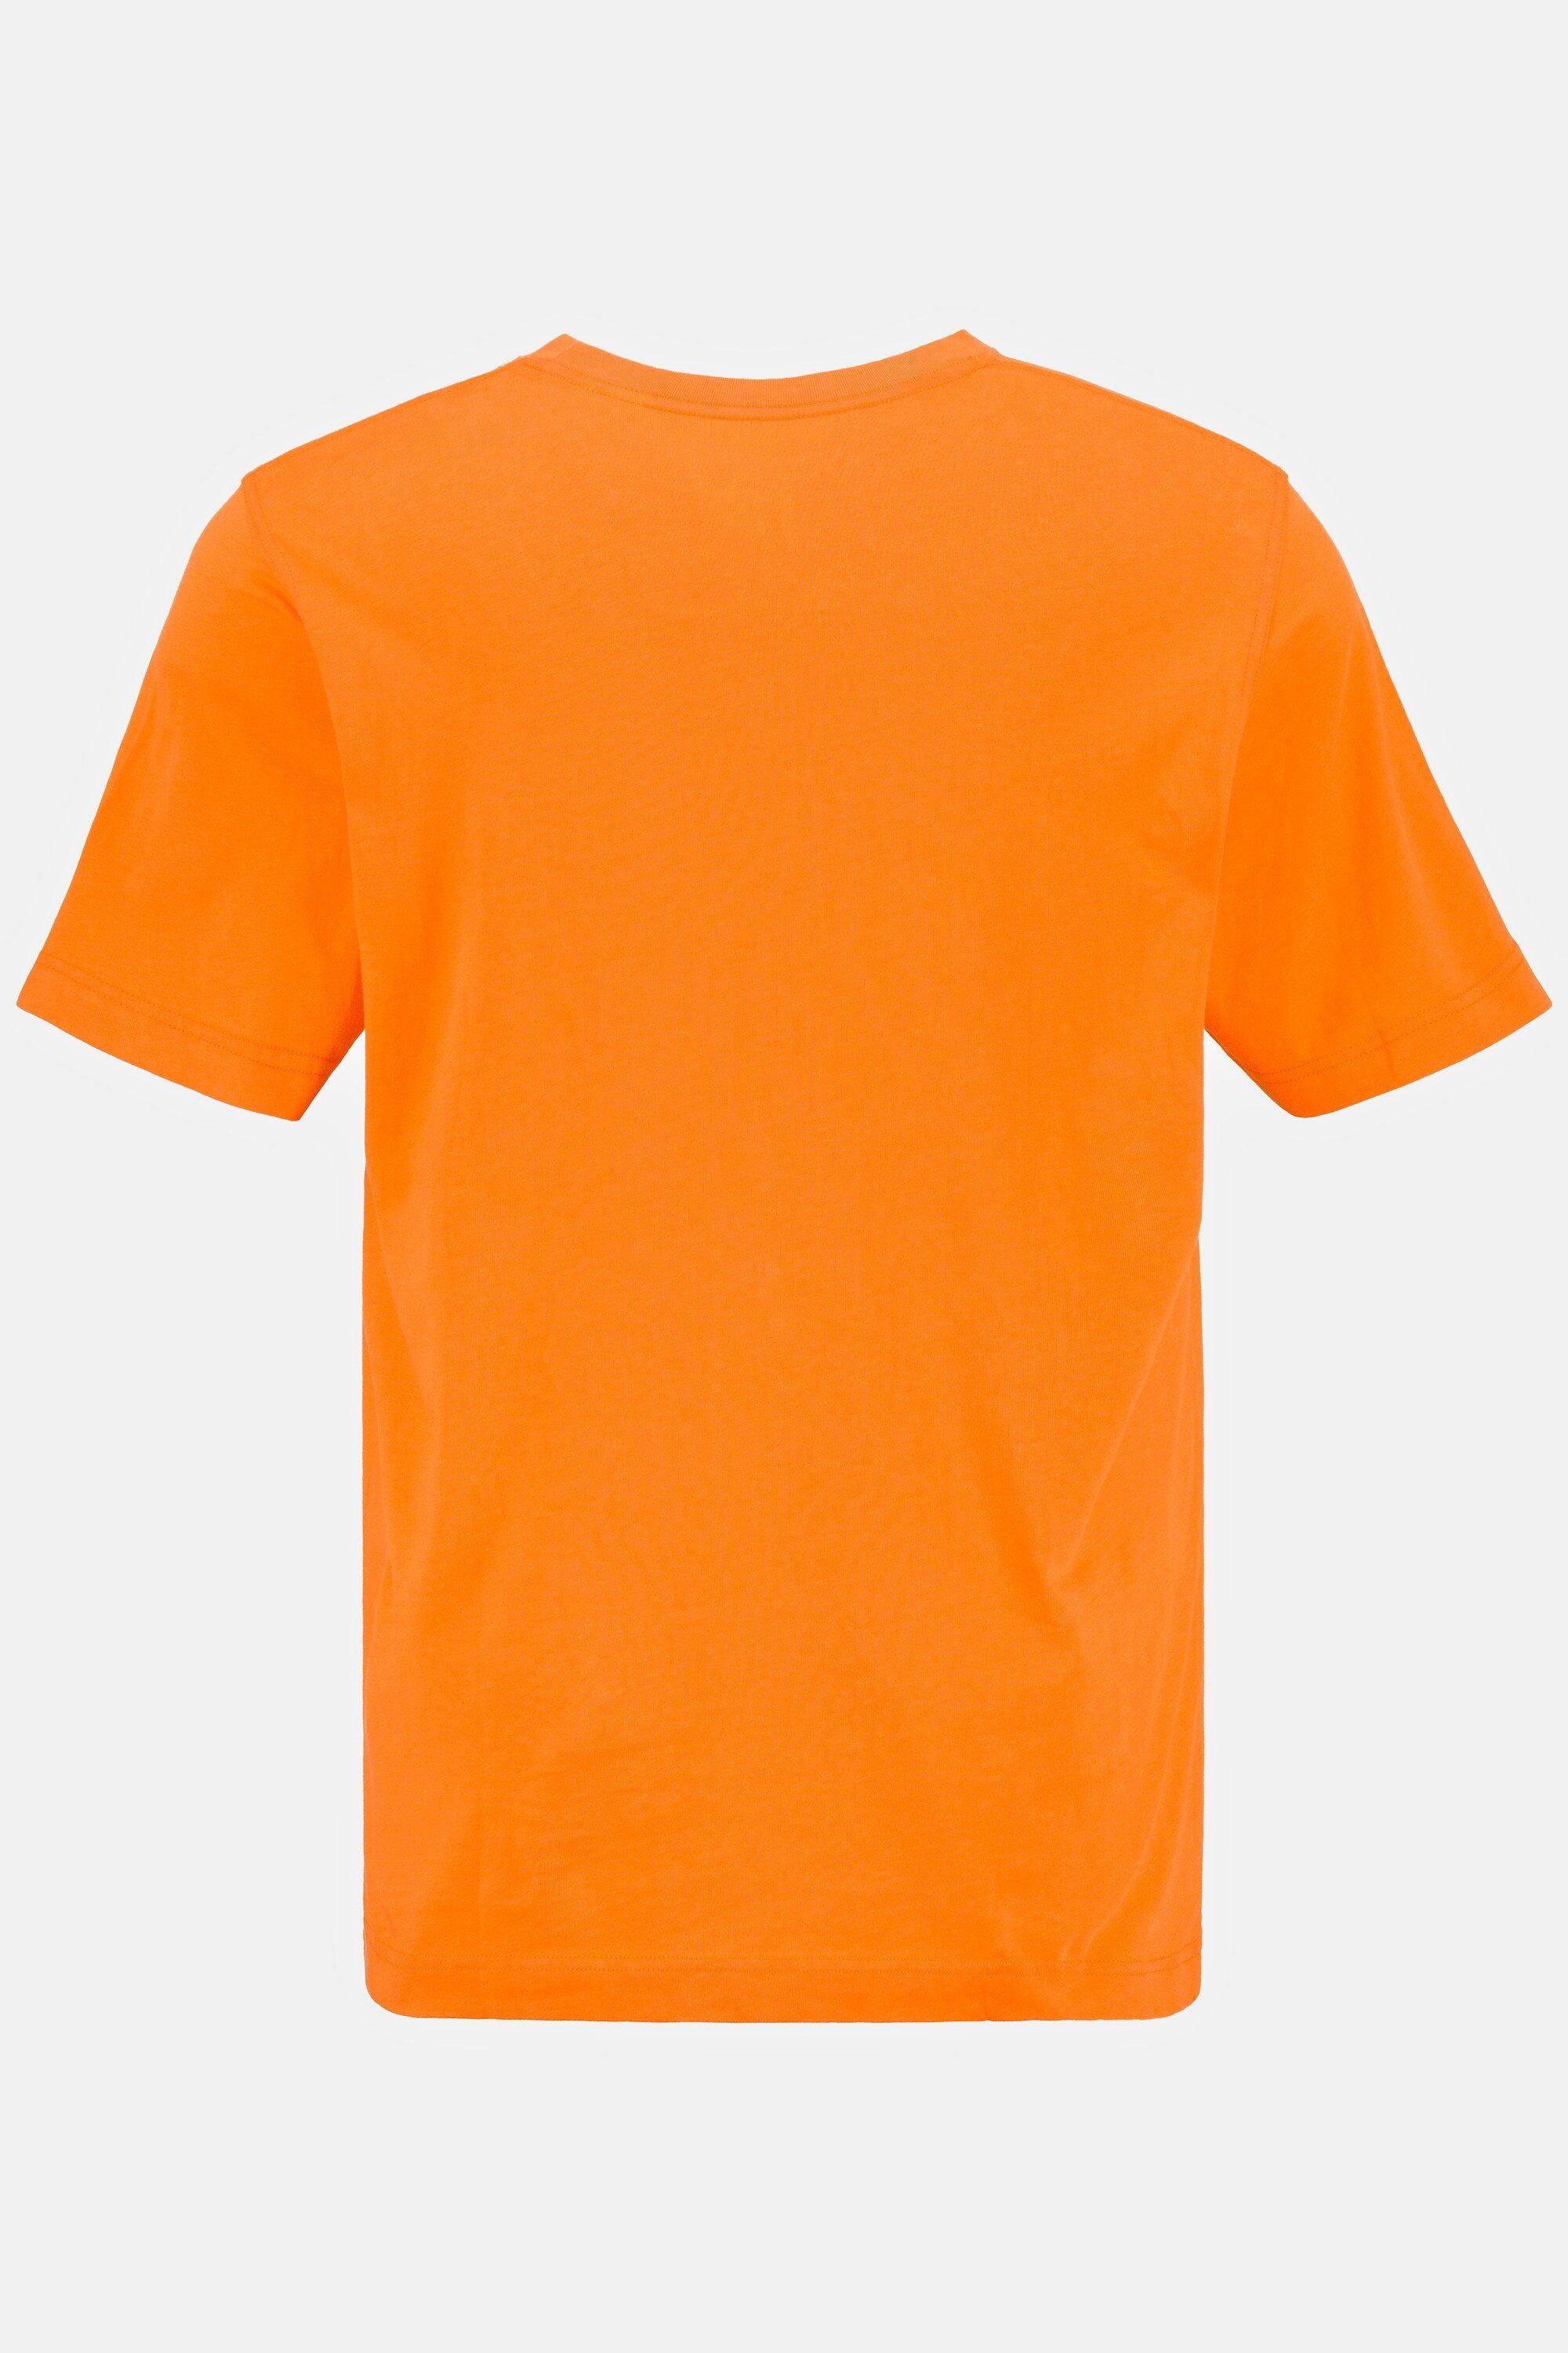 T-Shirt gekämmte hellorange JP1880 T-Shirt Rundhals Baumwolle Basic 8XL bis